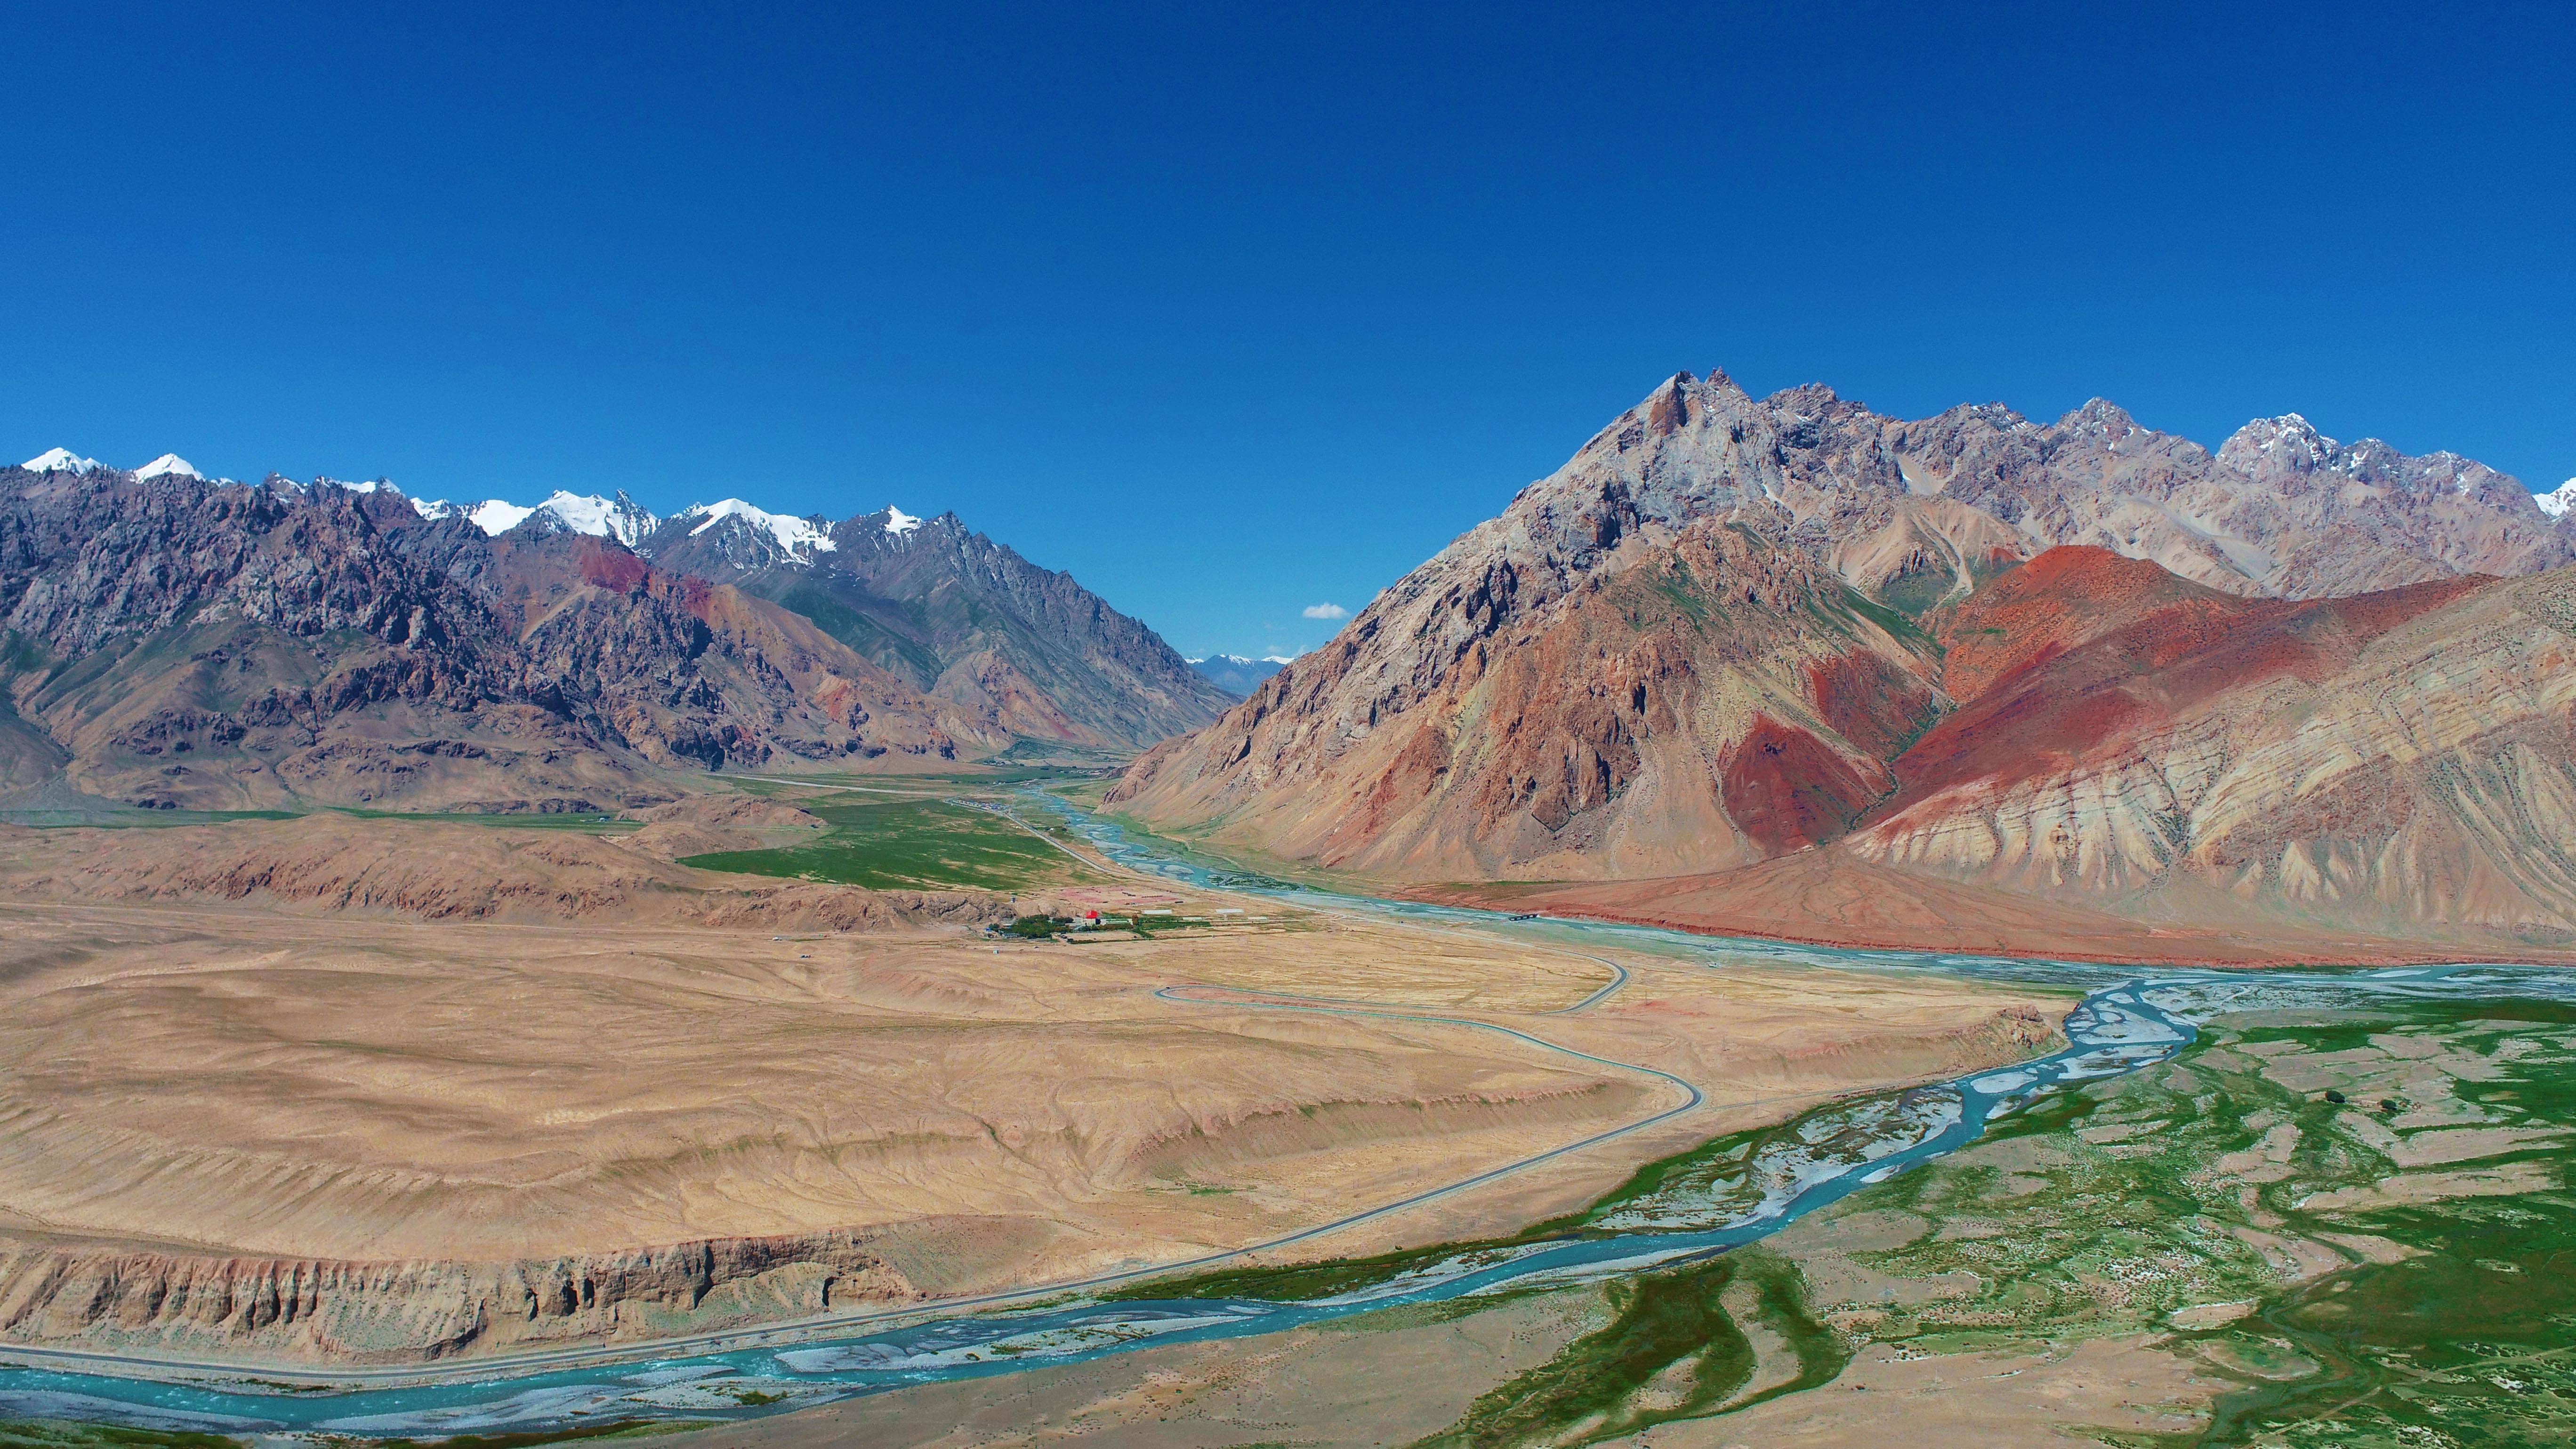 西起阿姆河上游的喷赤河及其支流帕米尔河,东接我国新疆塔什库尔干